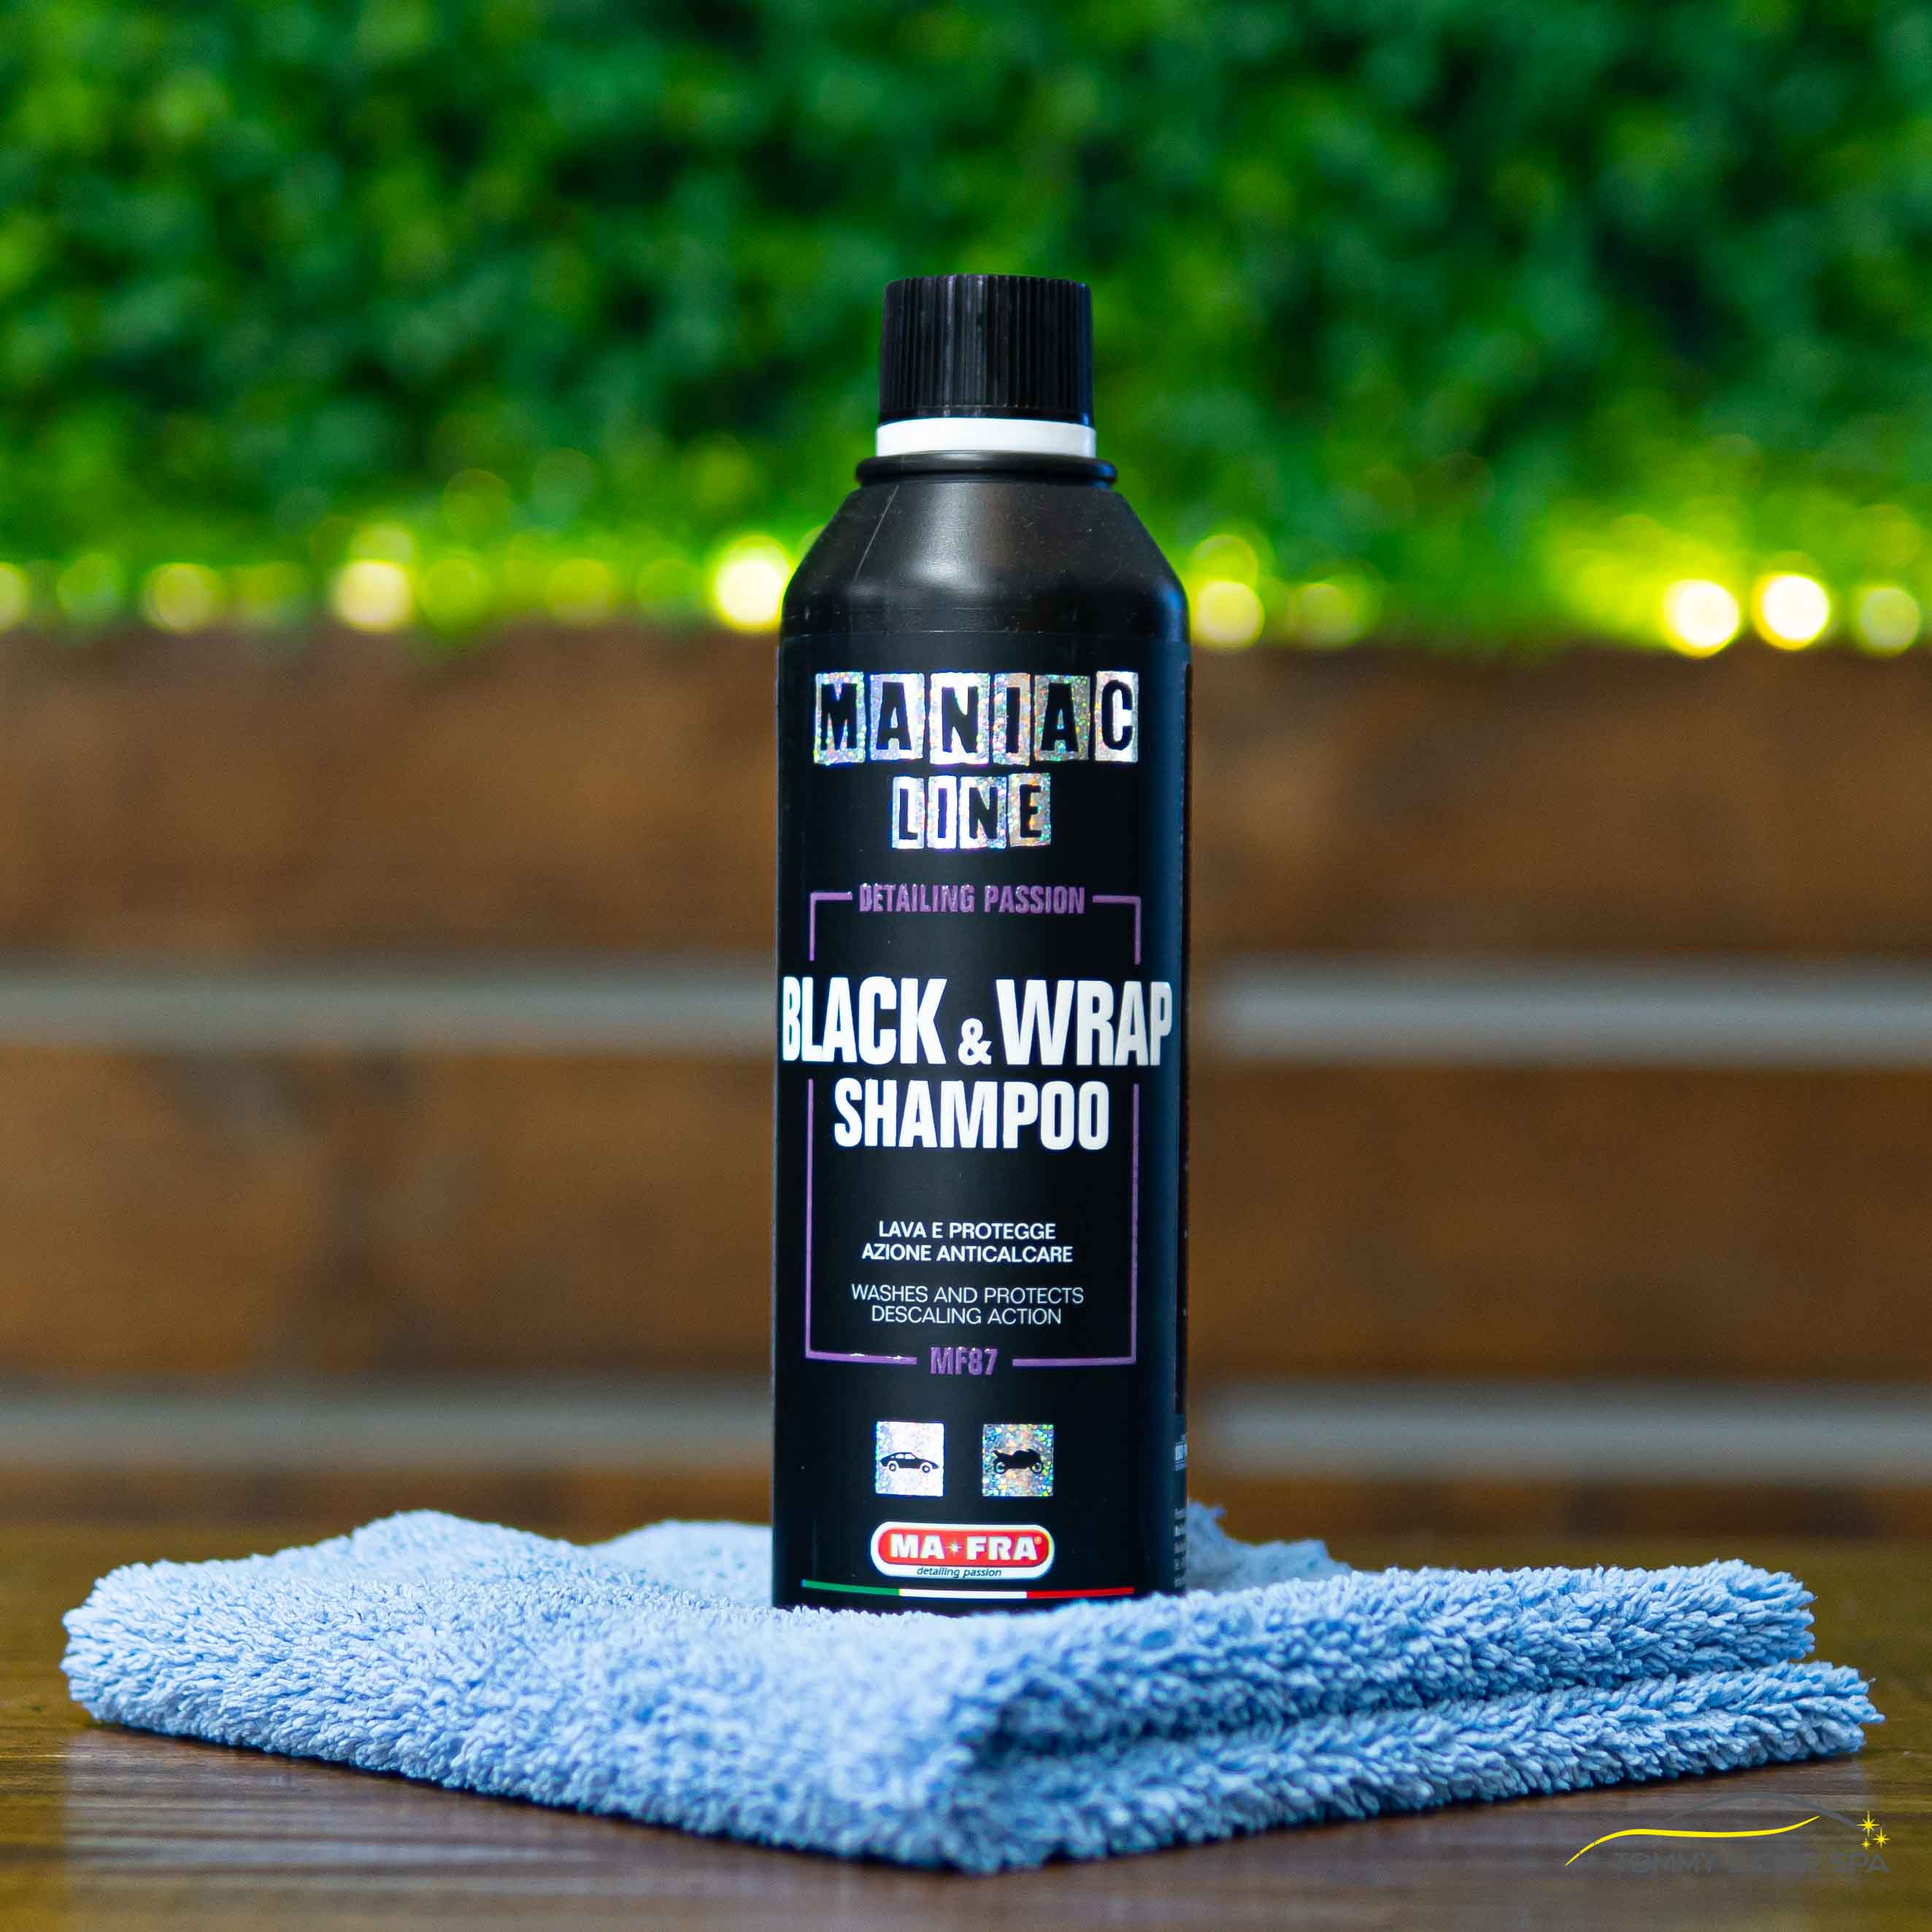 Maniac Line Black & Wrap Shampoo, Autósampon Koncentrátum Fekete és Fóliázott Felületekre, 500ml